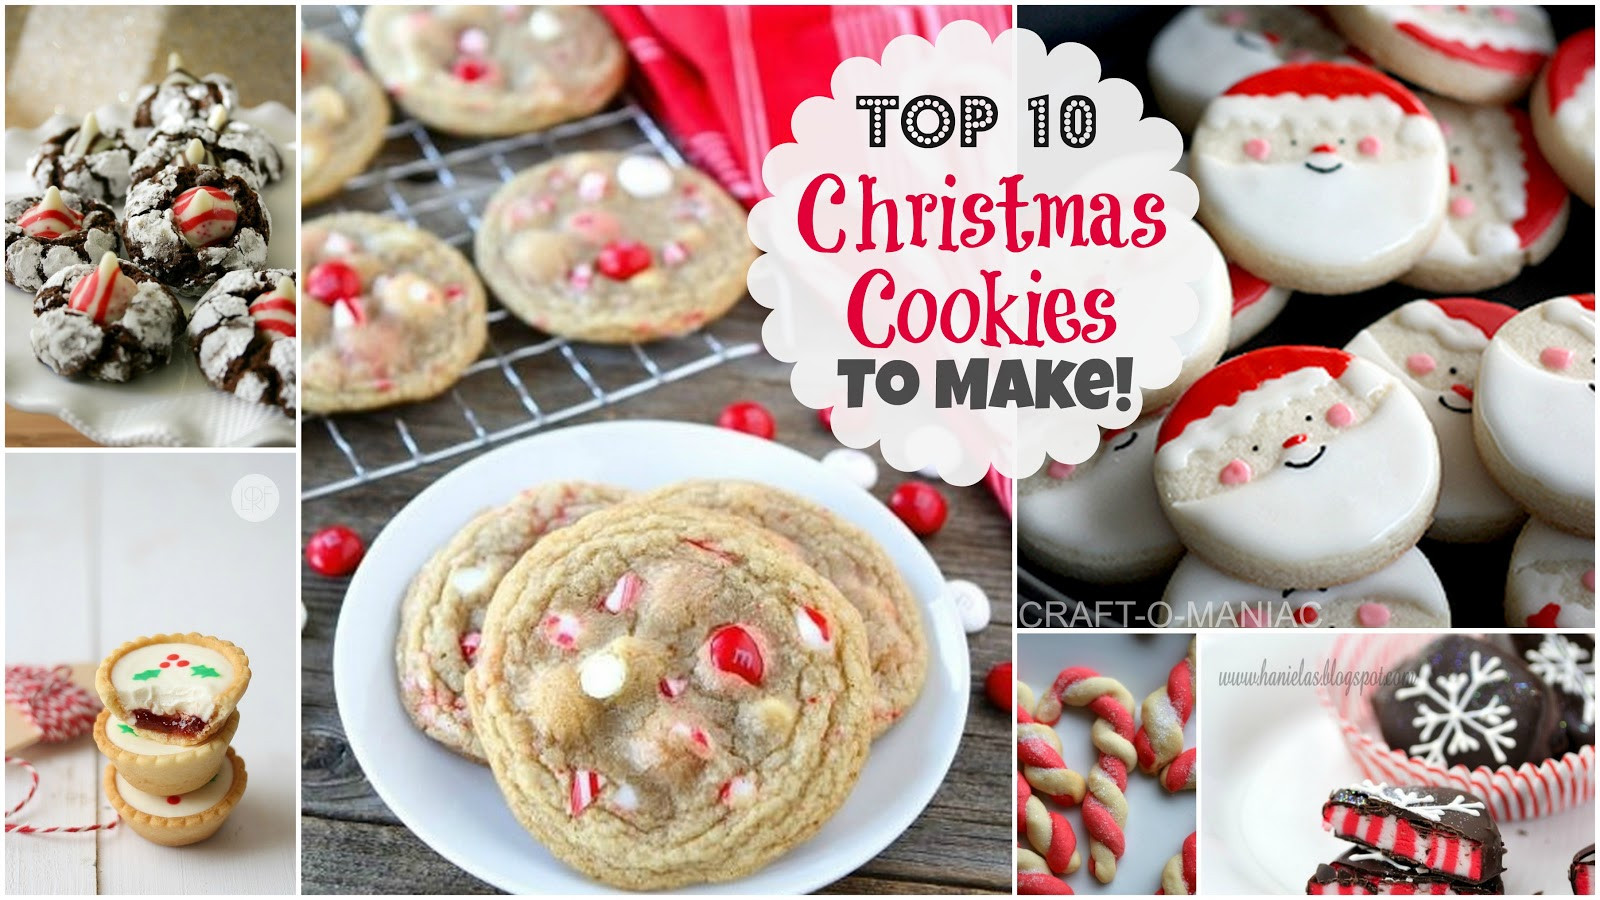 Top 10 Christmas Cookies
 Top 10 Christmas Cookies to Make Craft O Maniac